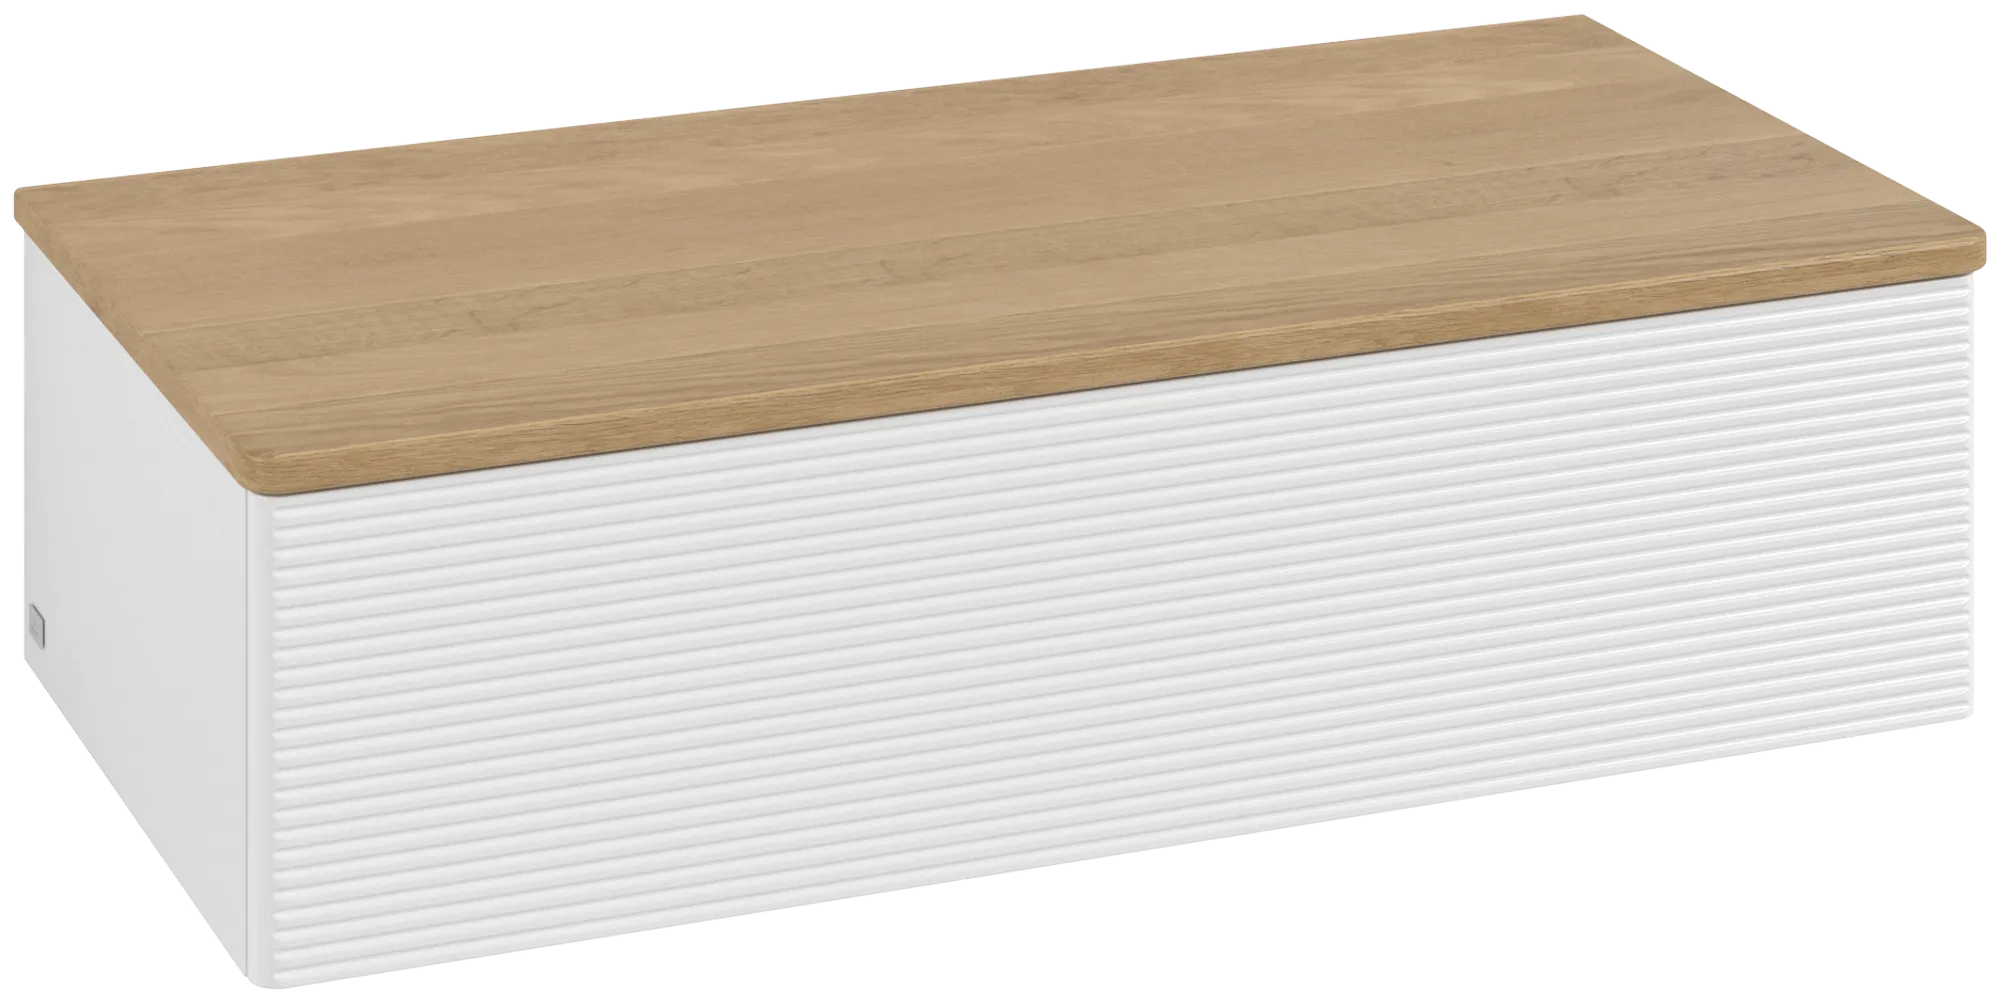 Bild von VILLEROY BOCH Antao Sideboard, 1 Auszug, 1000 x 268 x 500 mm, Front mit Struktur, Glossy White Lacquer / Honey Oak #K40101GF